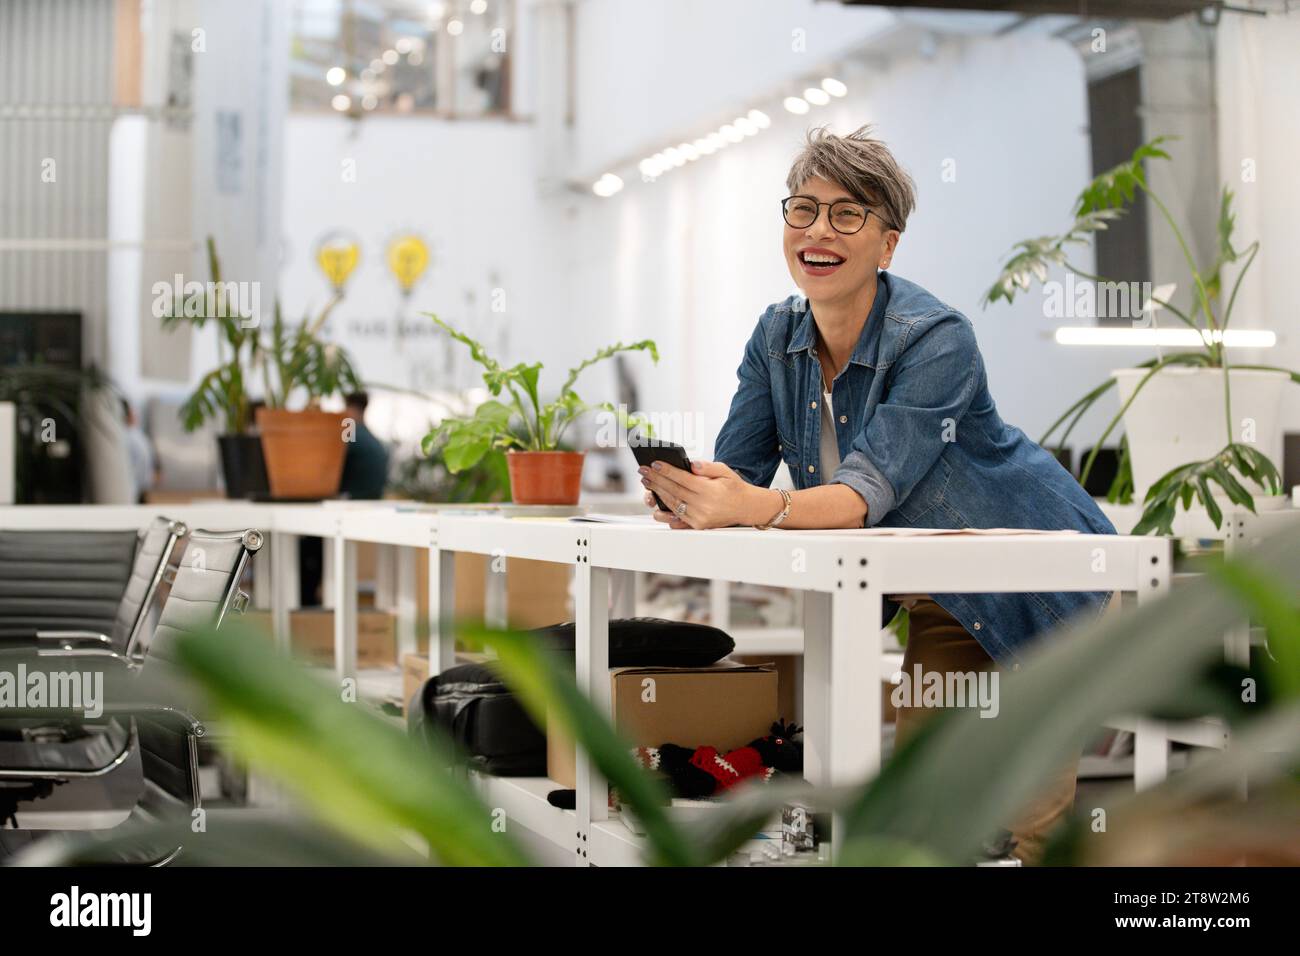 Imprenditrice donna che scorre sullo smartphone mentre si appoggia al tavolo Foto Stock